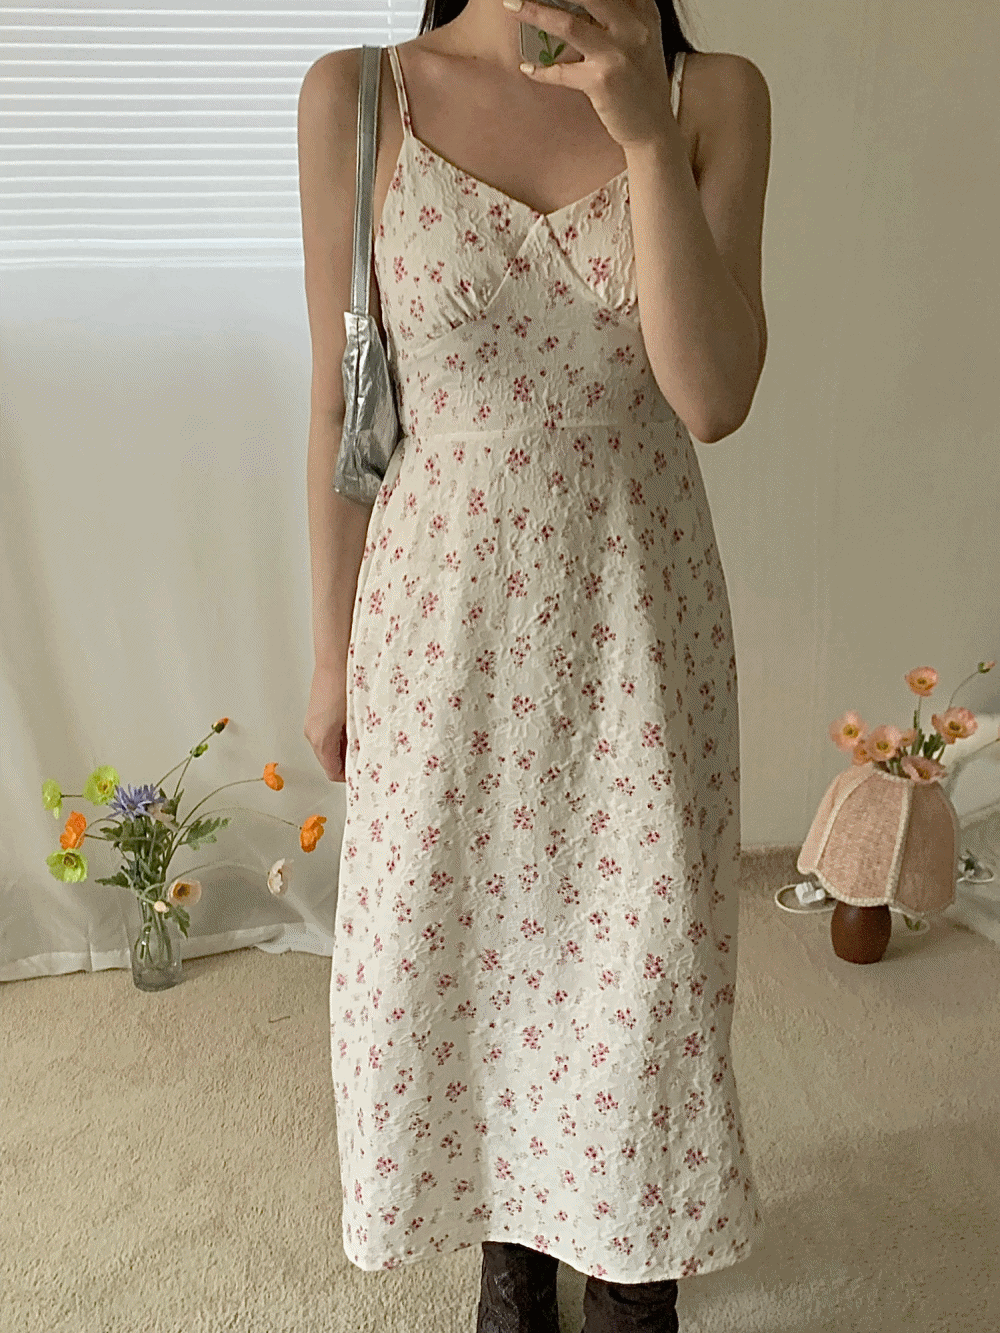 [Dress] Bouquet lace bustier dress / 2 colors